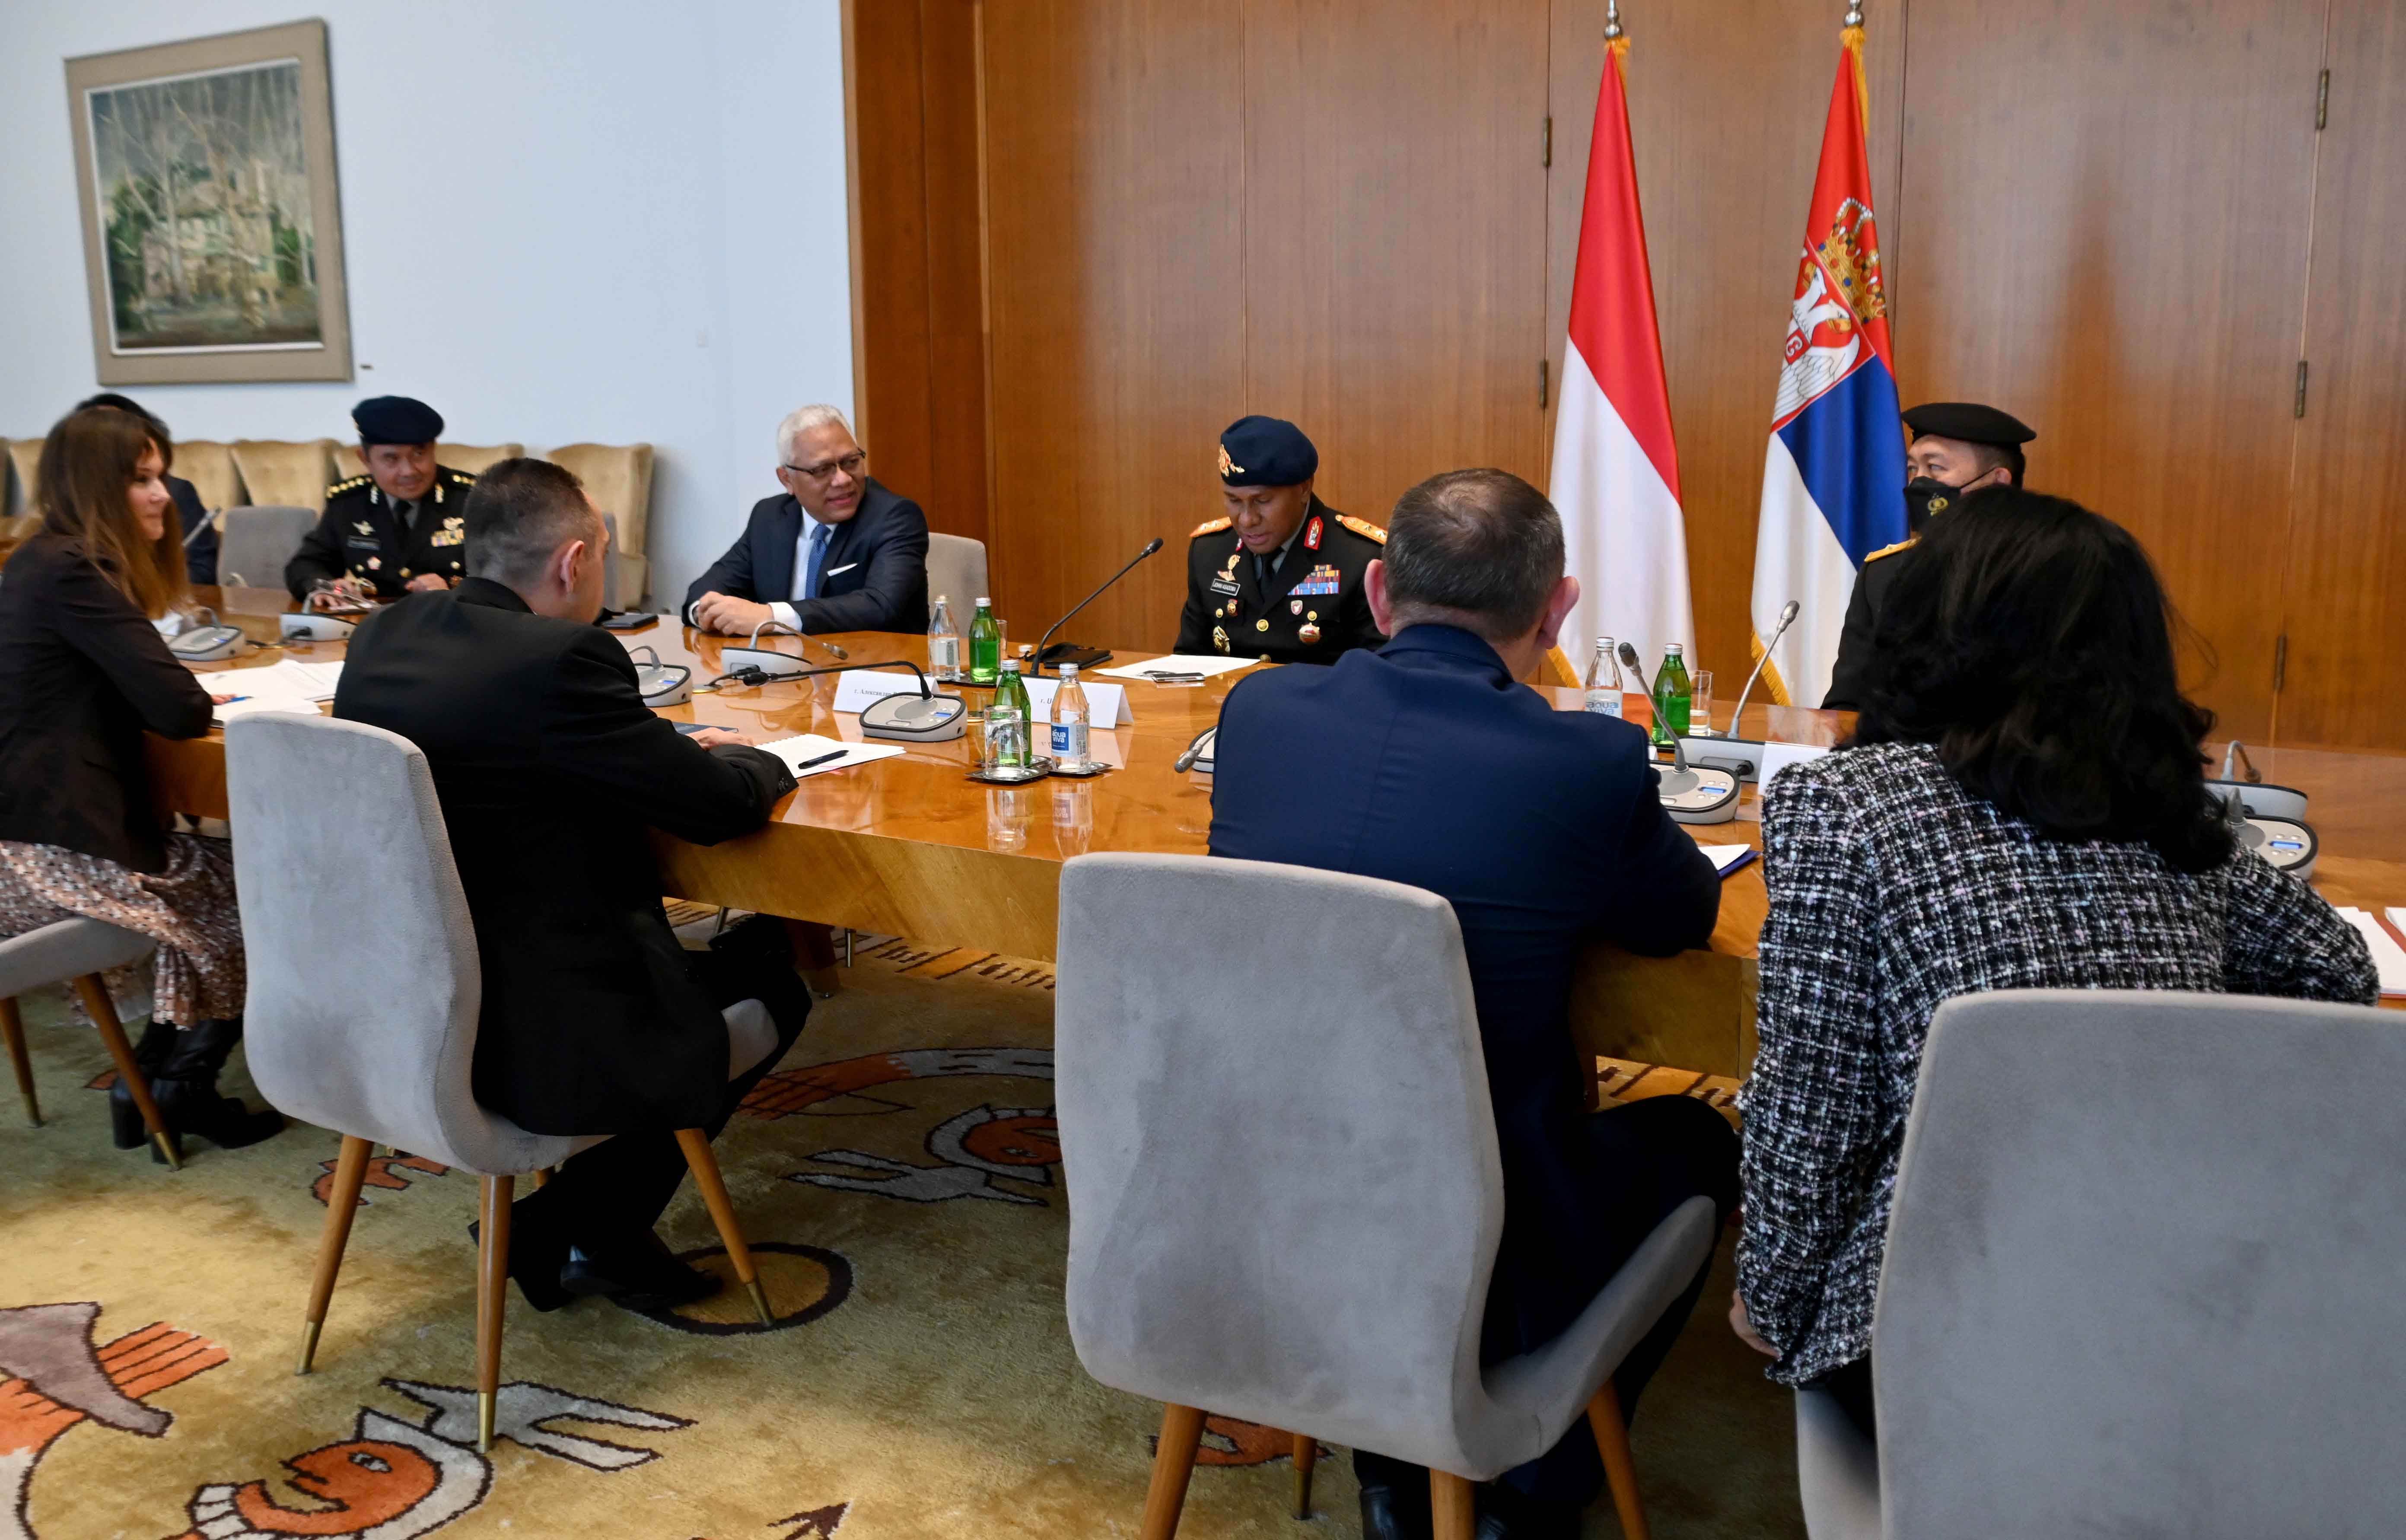 Министар Вулин се захвалио индонежанској делегацији која је поновила принципијелан став по питању непризнавања такозваног Косова